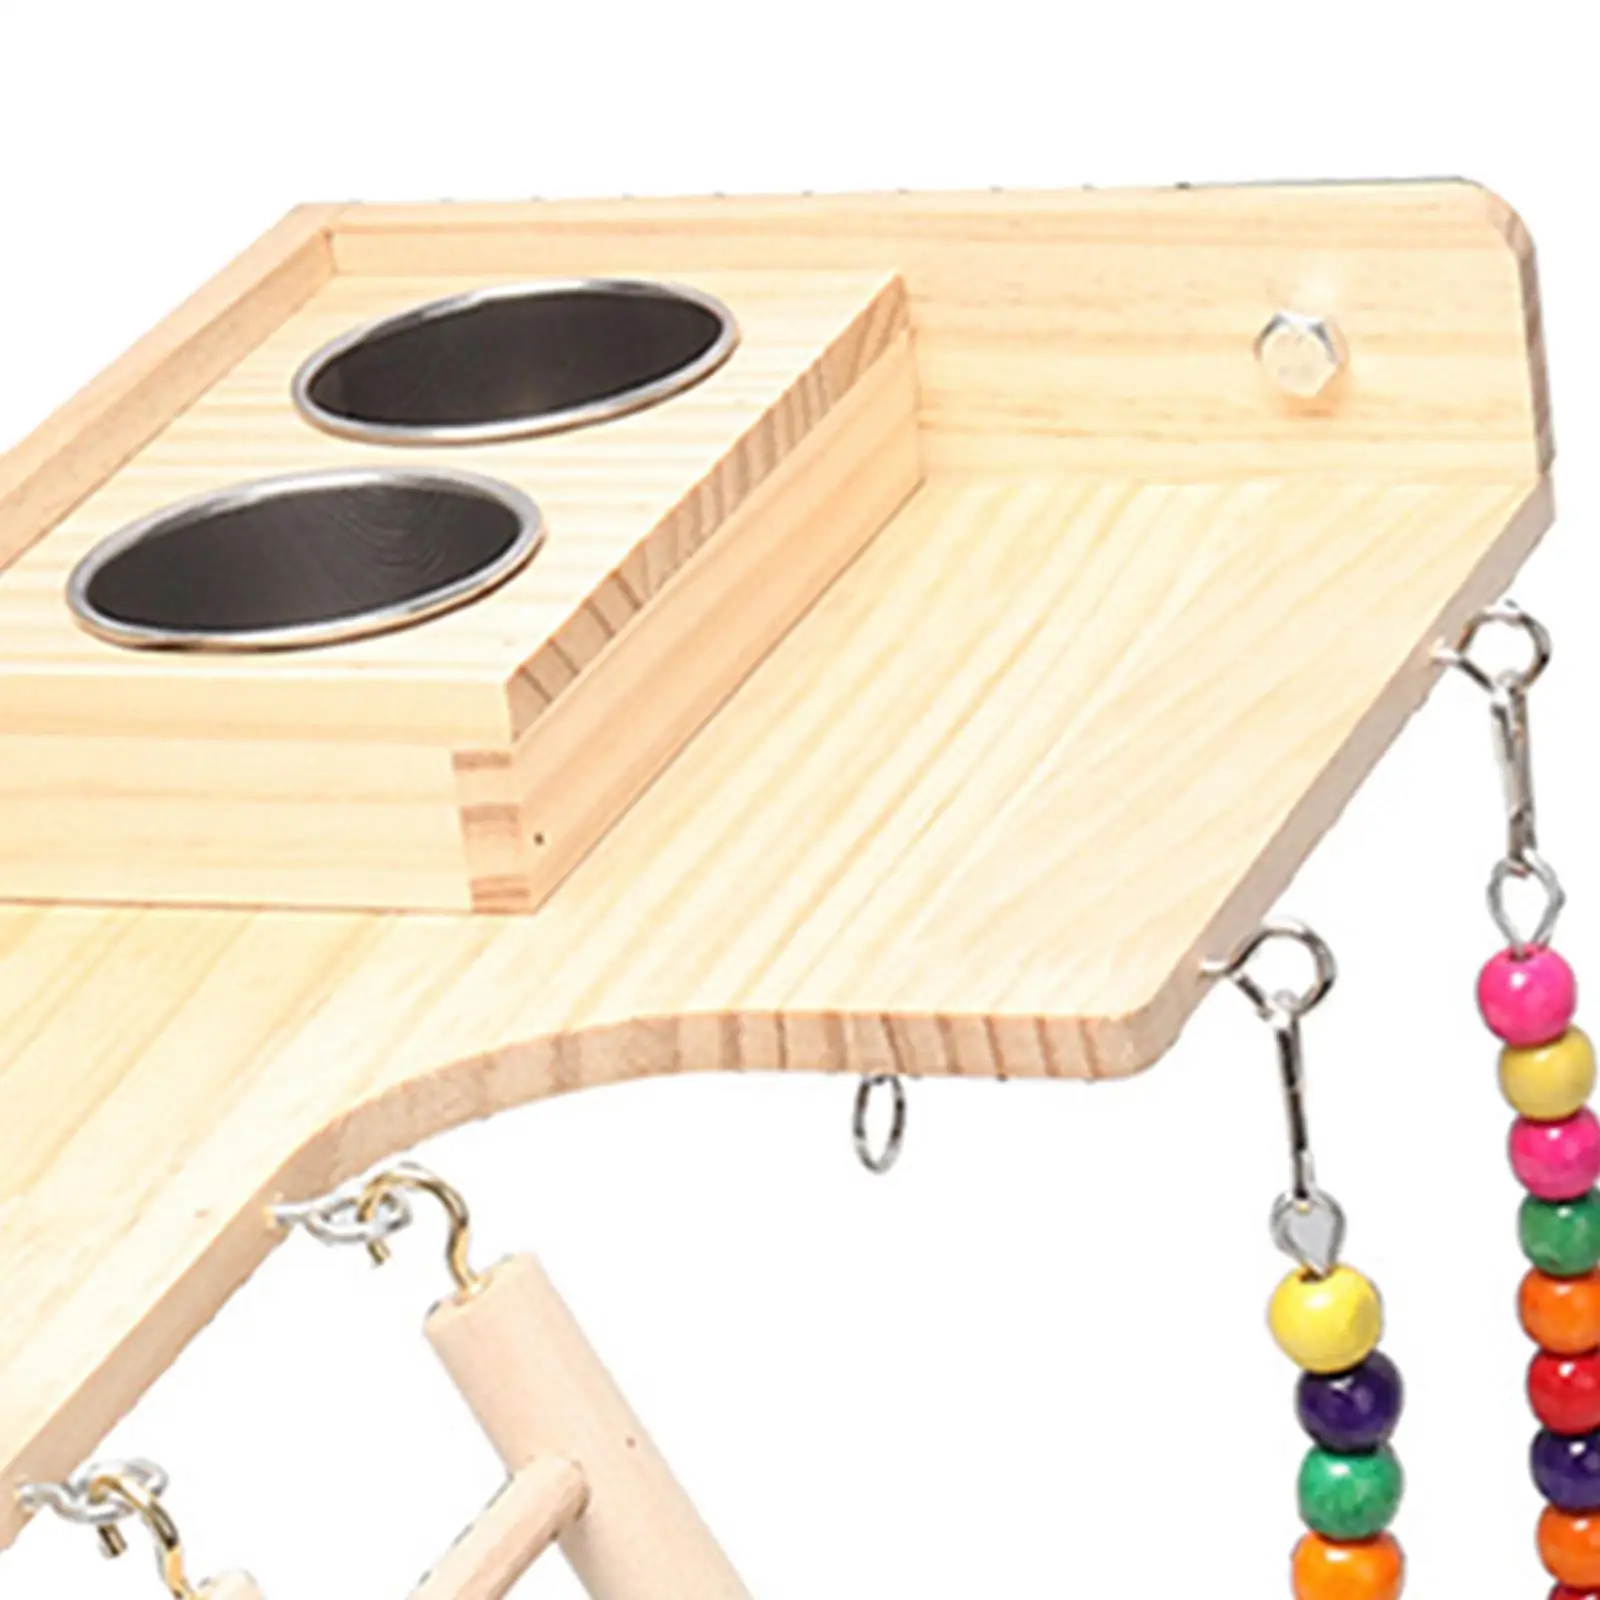 Pet Bird Parrot Playground Wooden Ladder Toy Interactive Platform